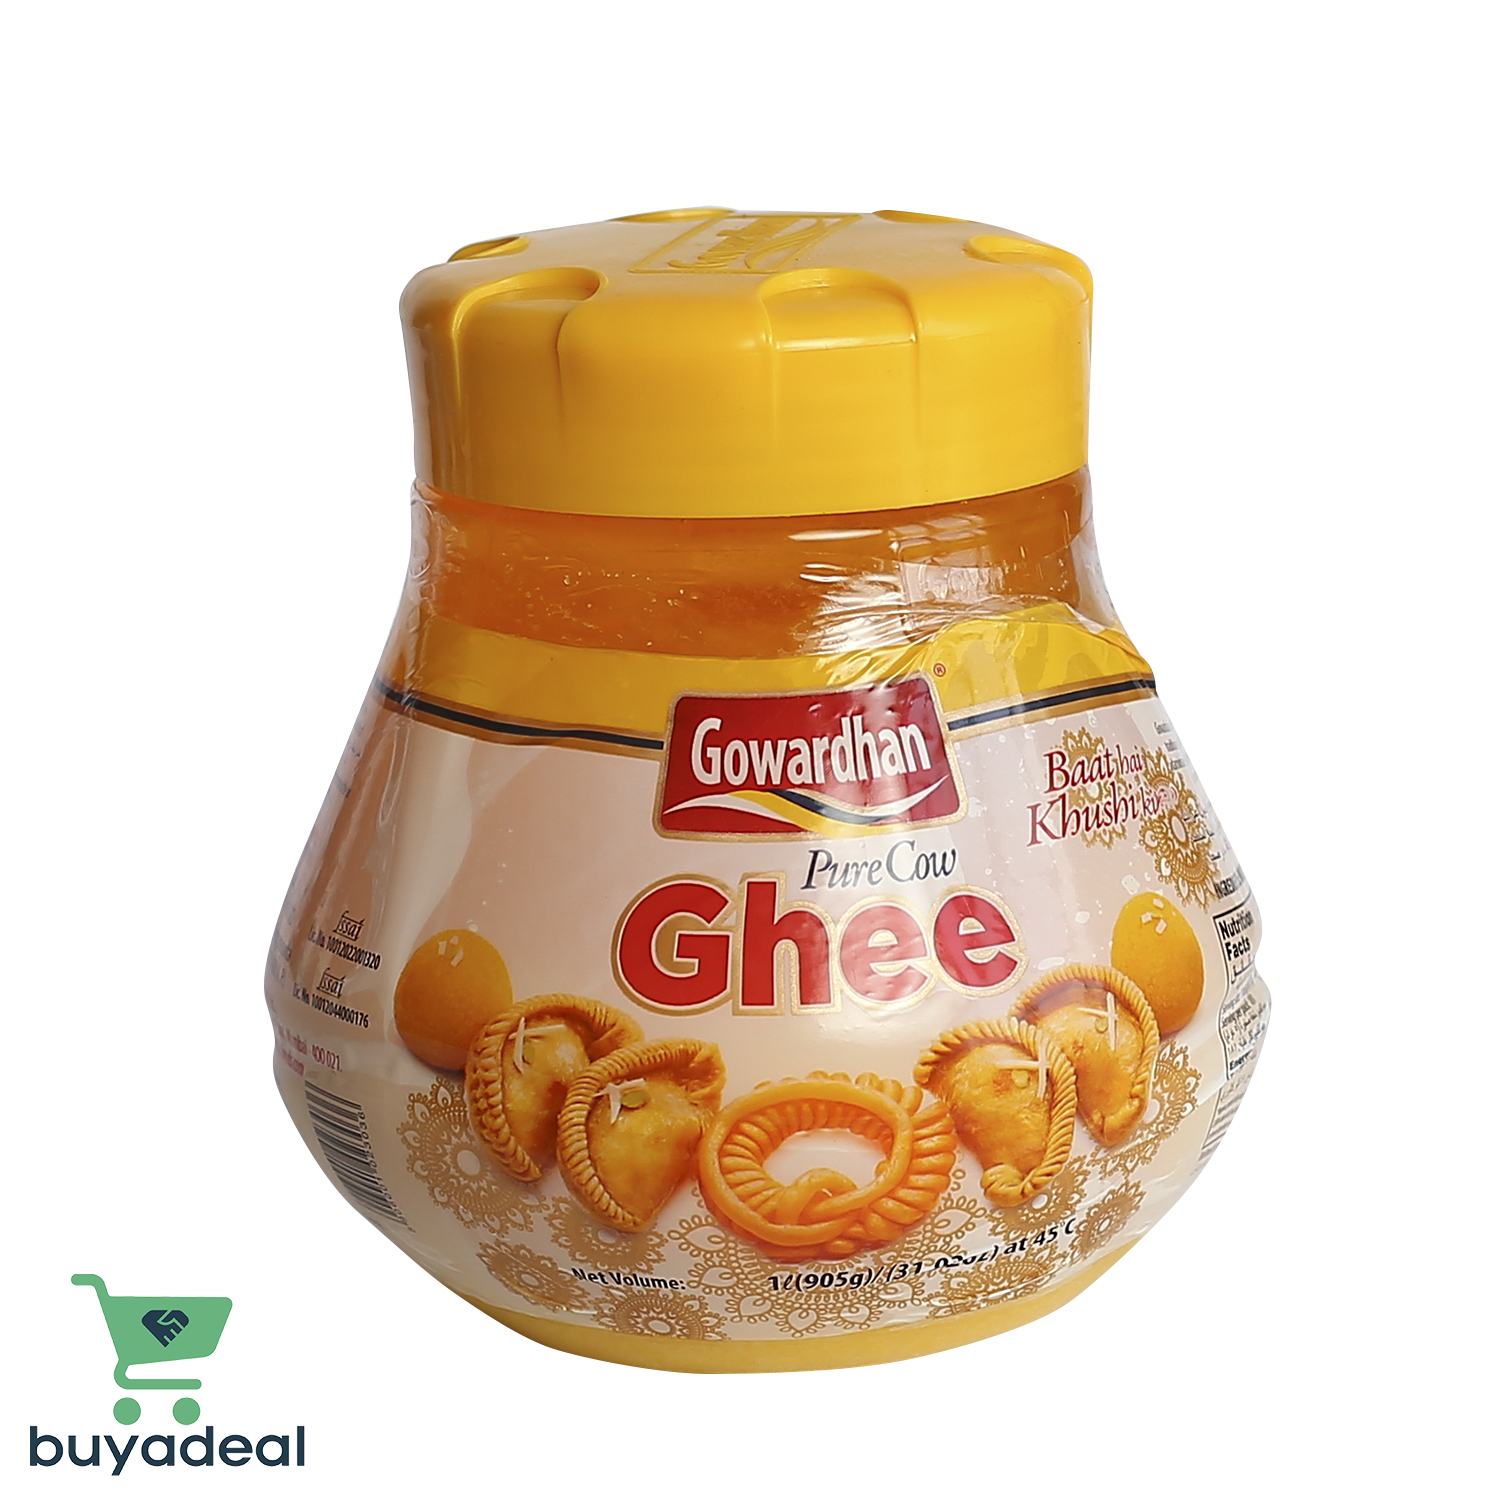 Buyadeal Product Gowardhan Cow Ghee 1 Kg